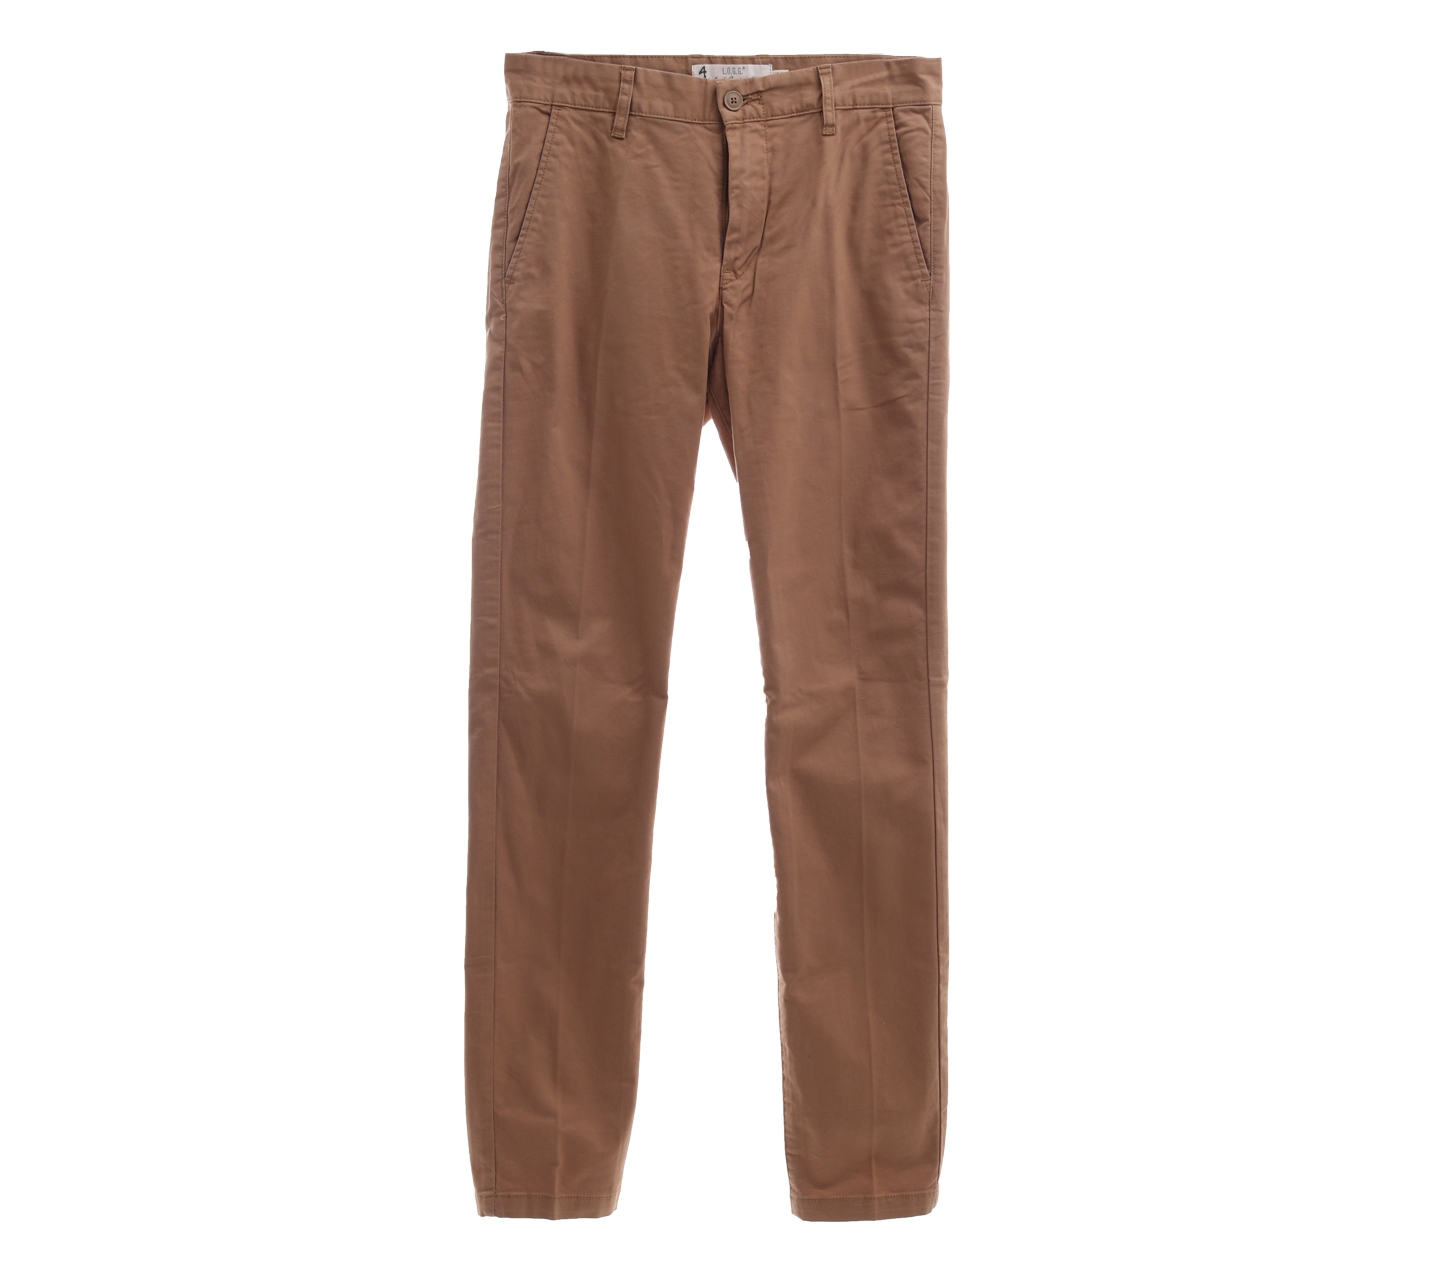 H&M brown long pants